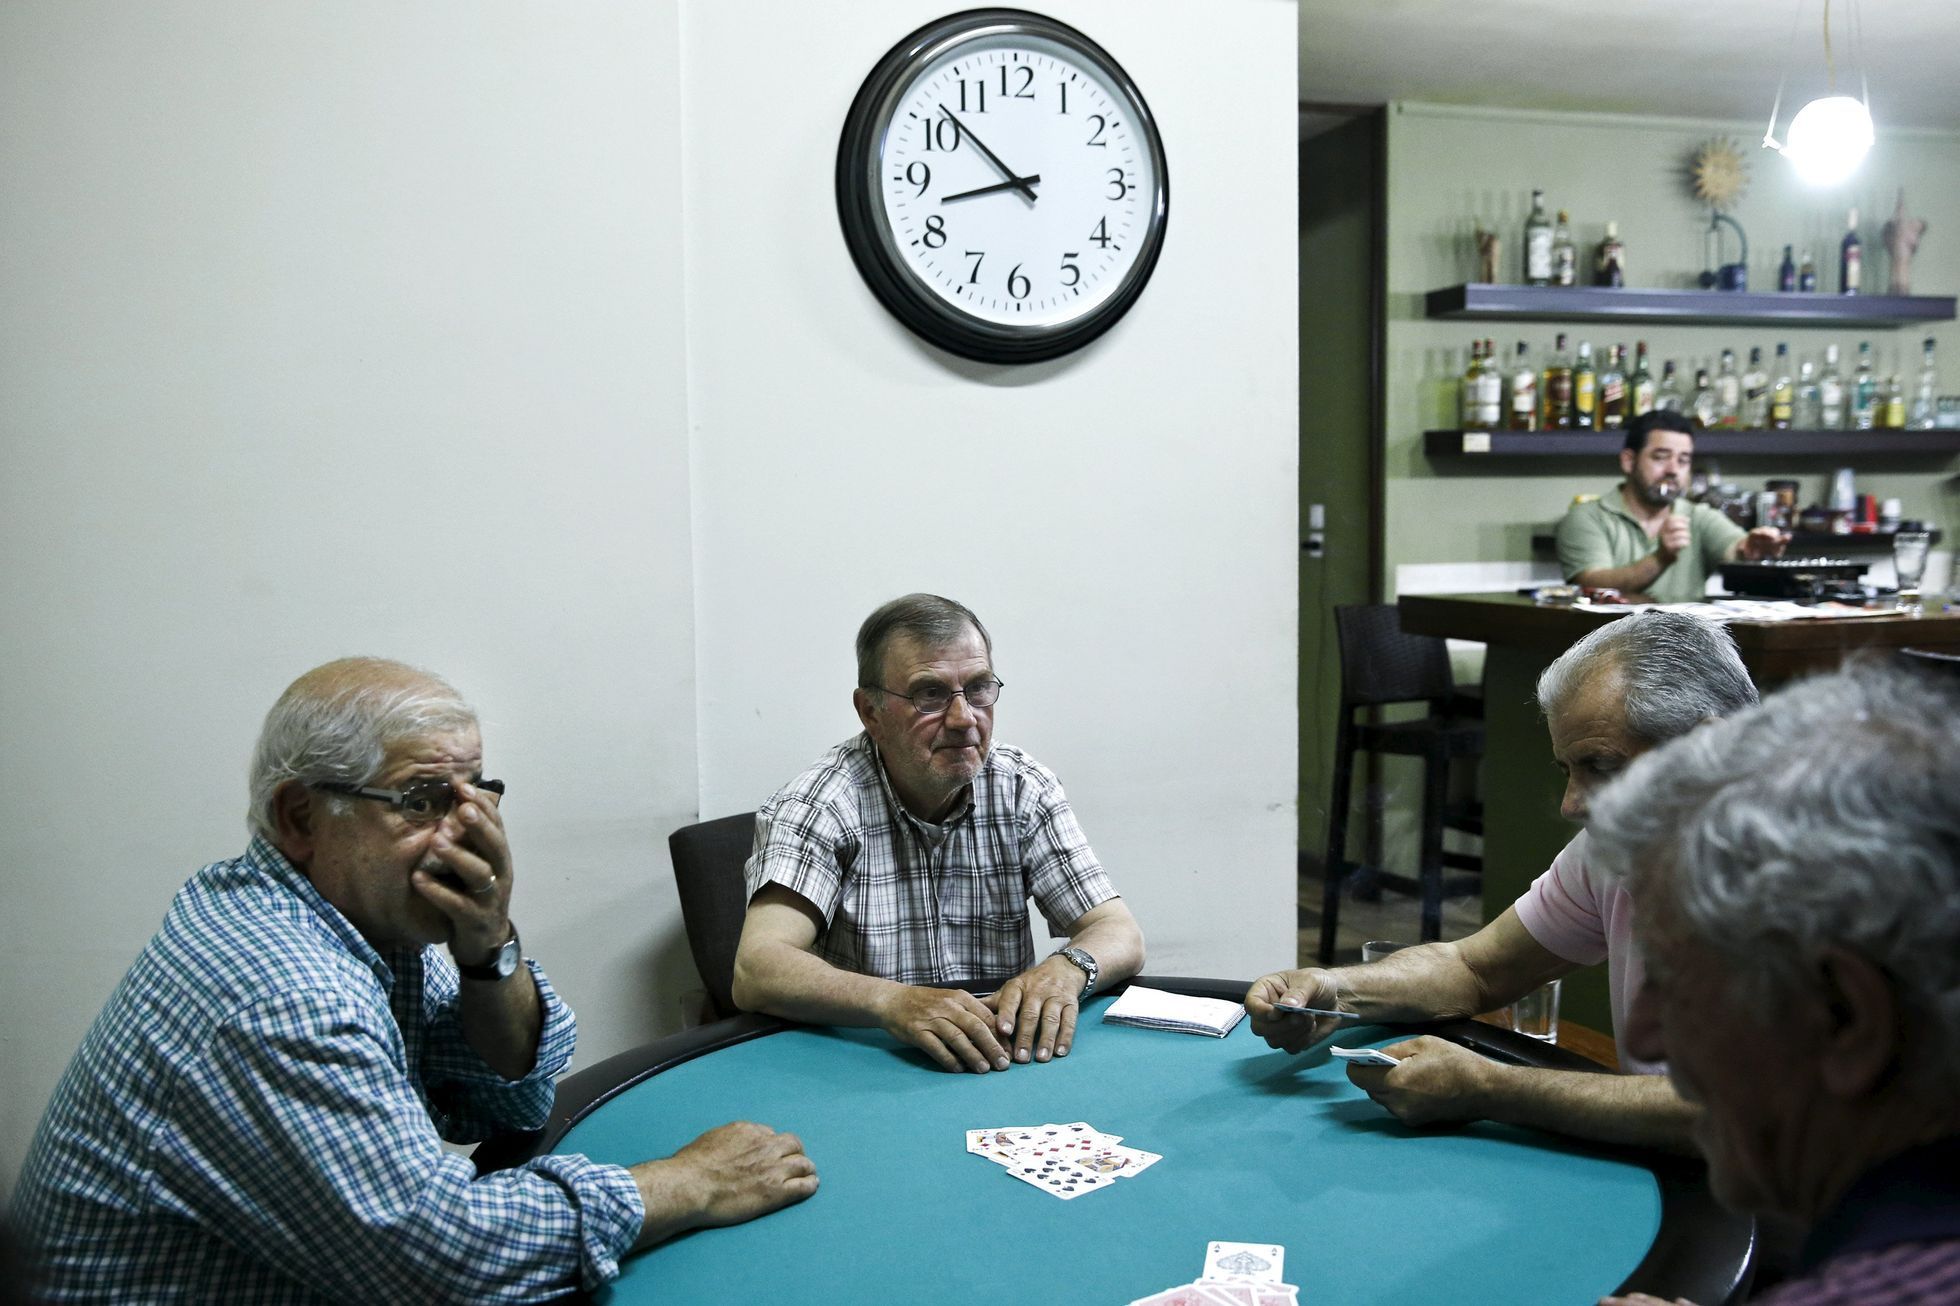 Řečtí důchodci hrají karty v kavárně nedaleko Atén.